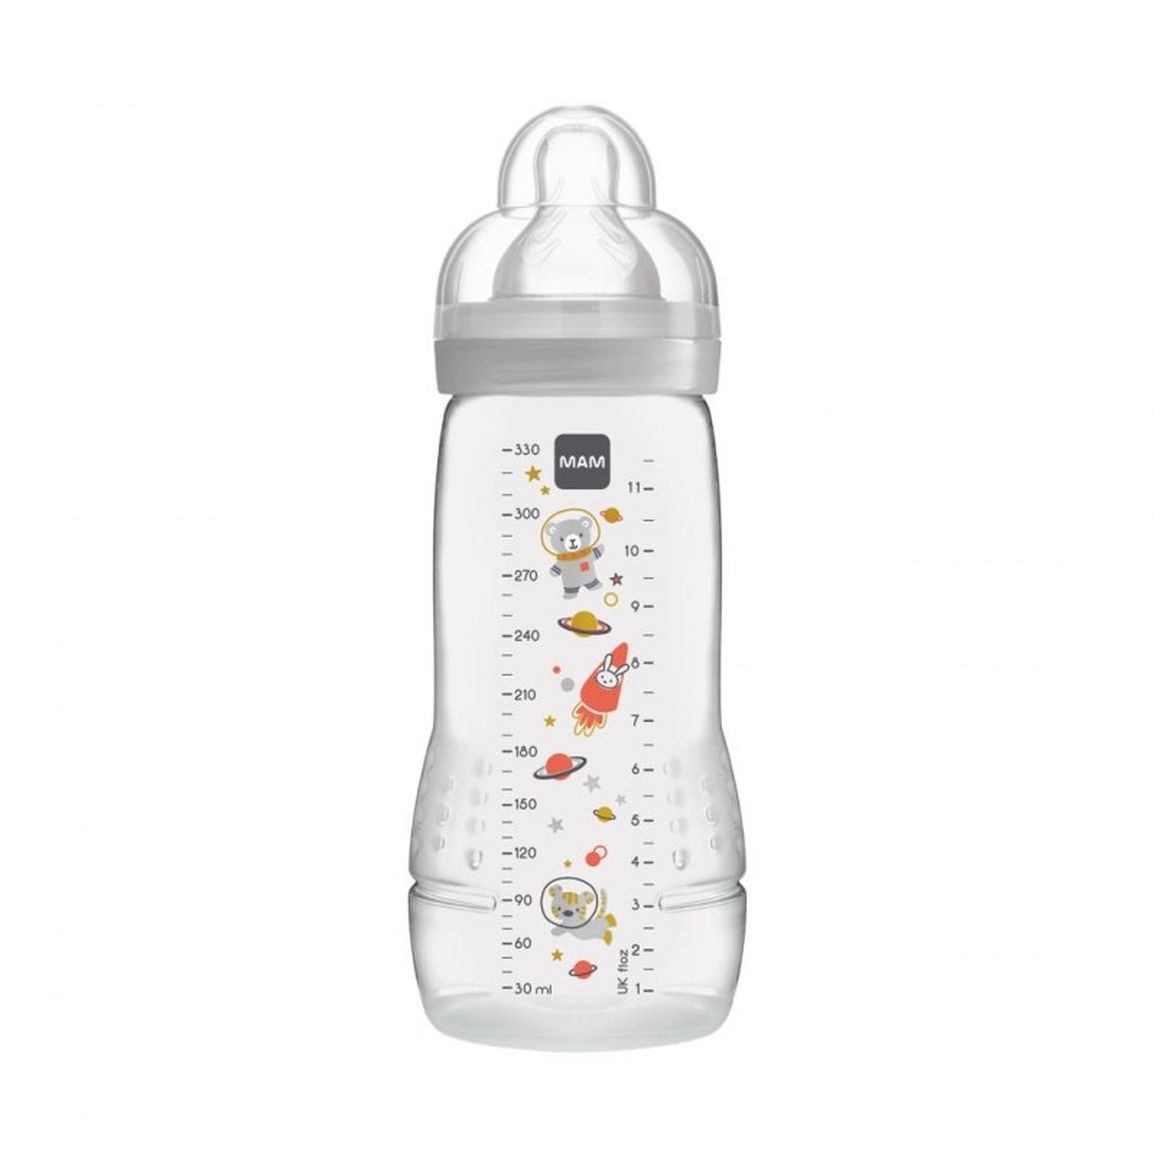 Dojčenská fľaša 330ml, unisex3